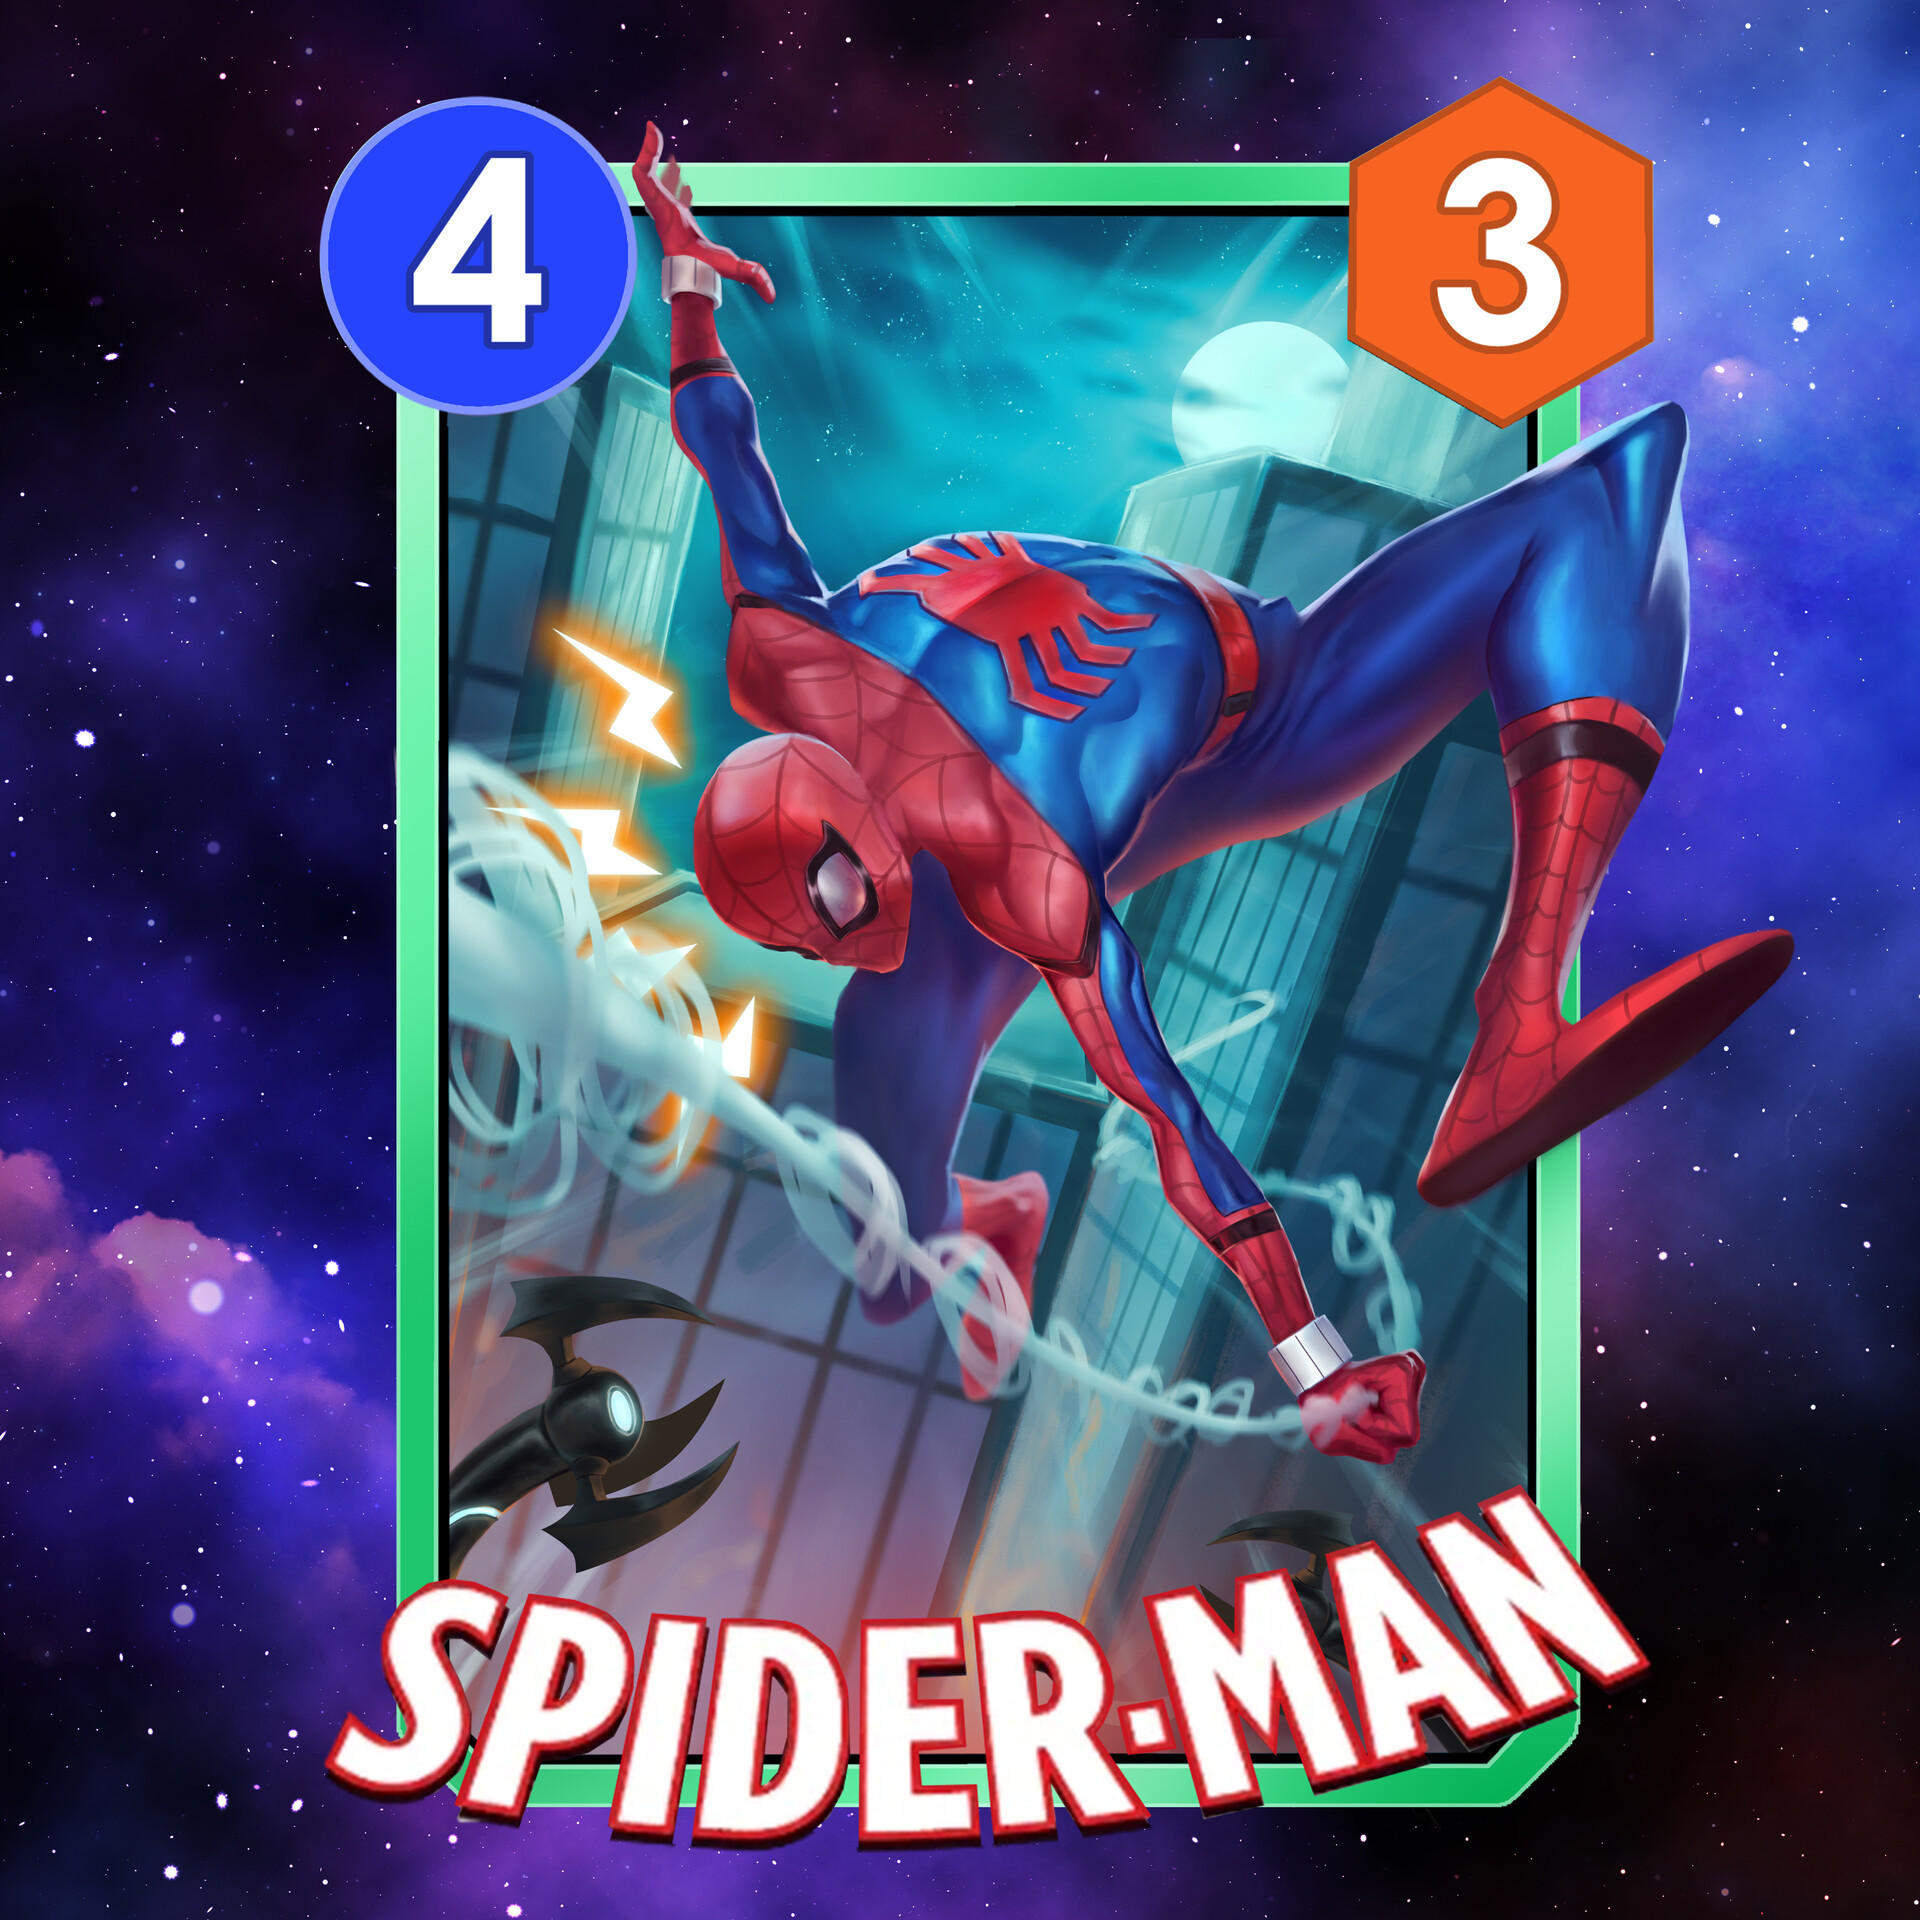 Spider-Man - Marvel Snap Cards